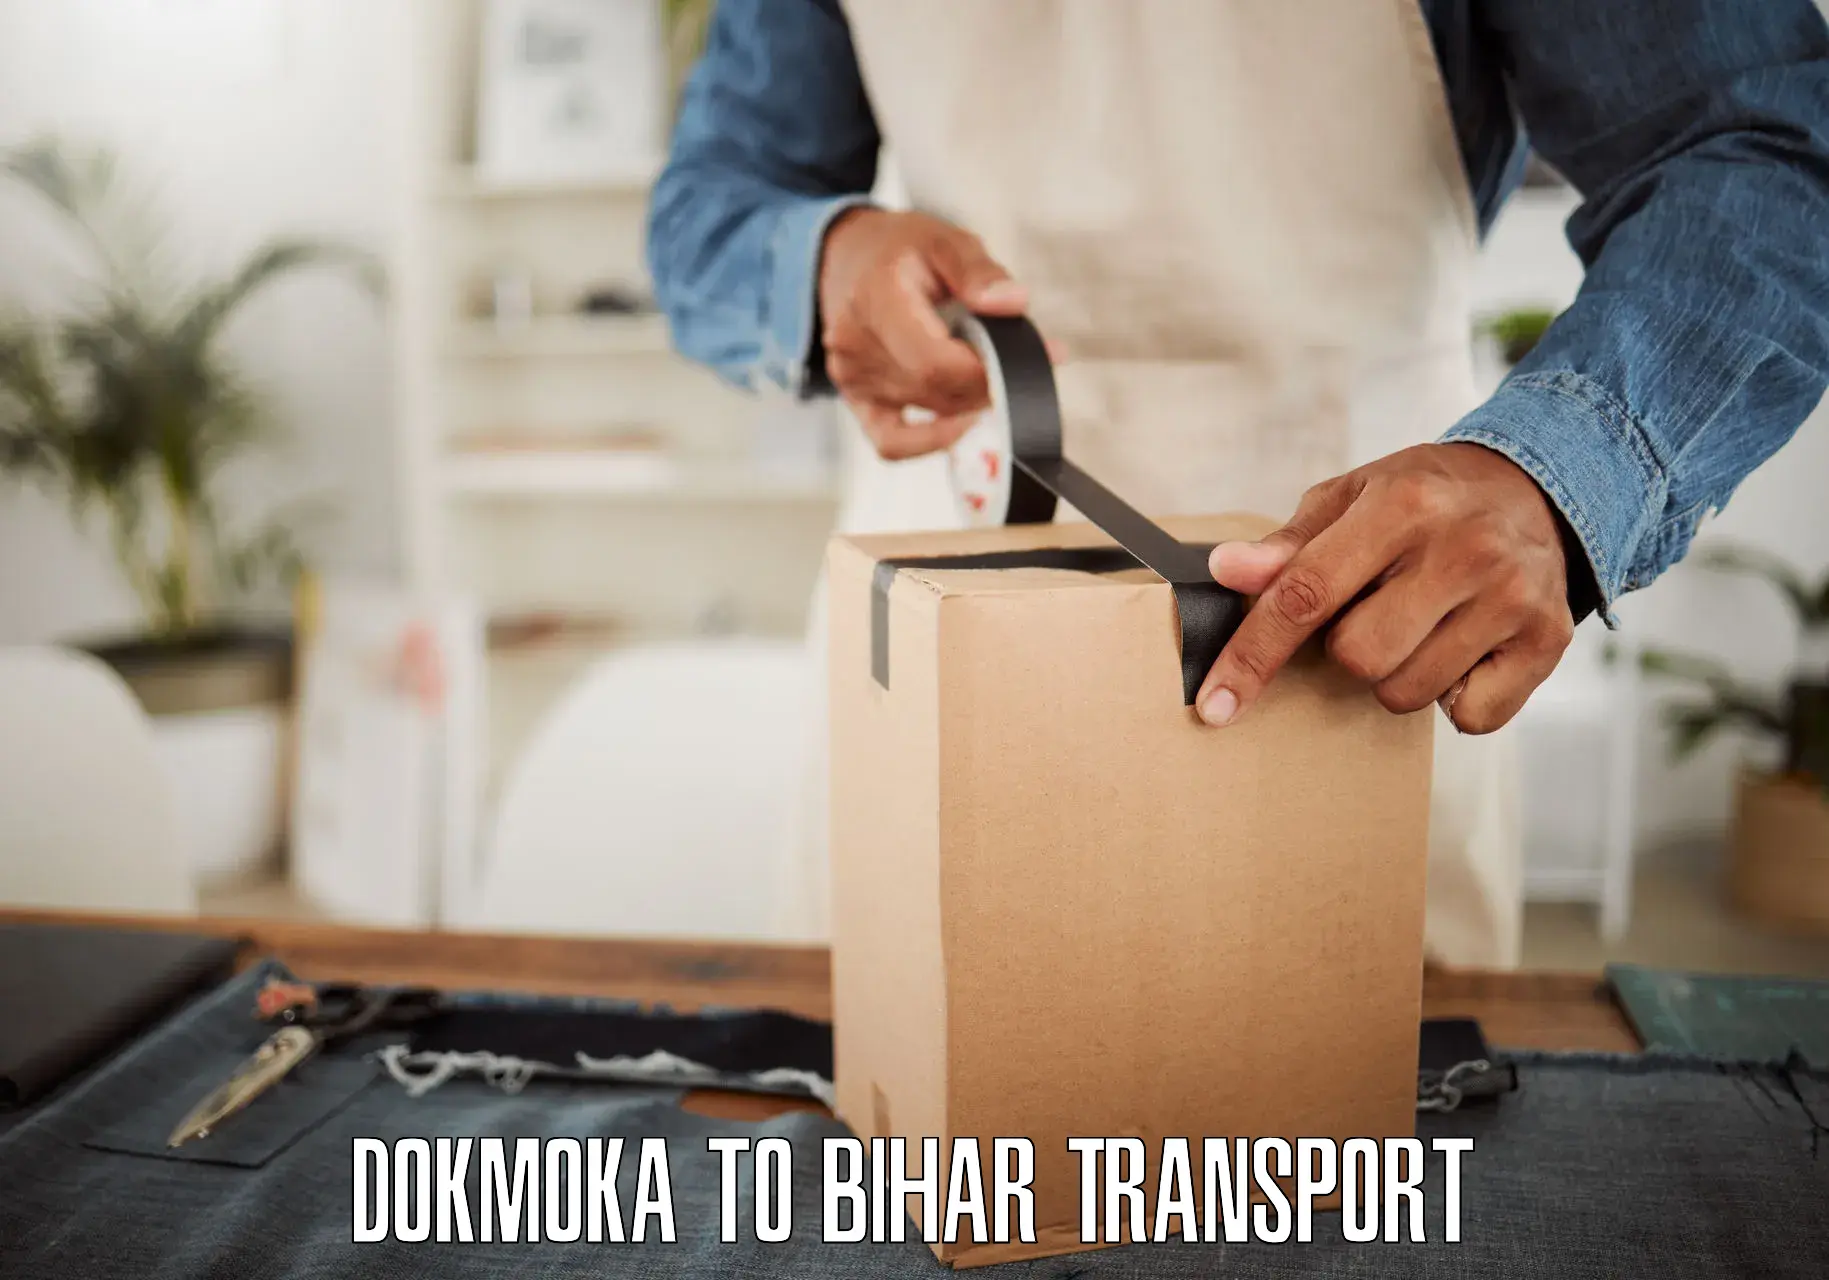 Luggage transport services Dokmoka to Dehri